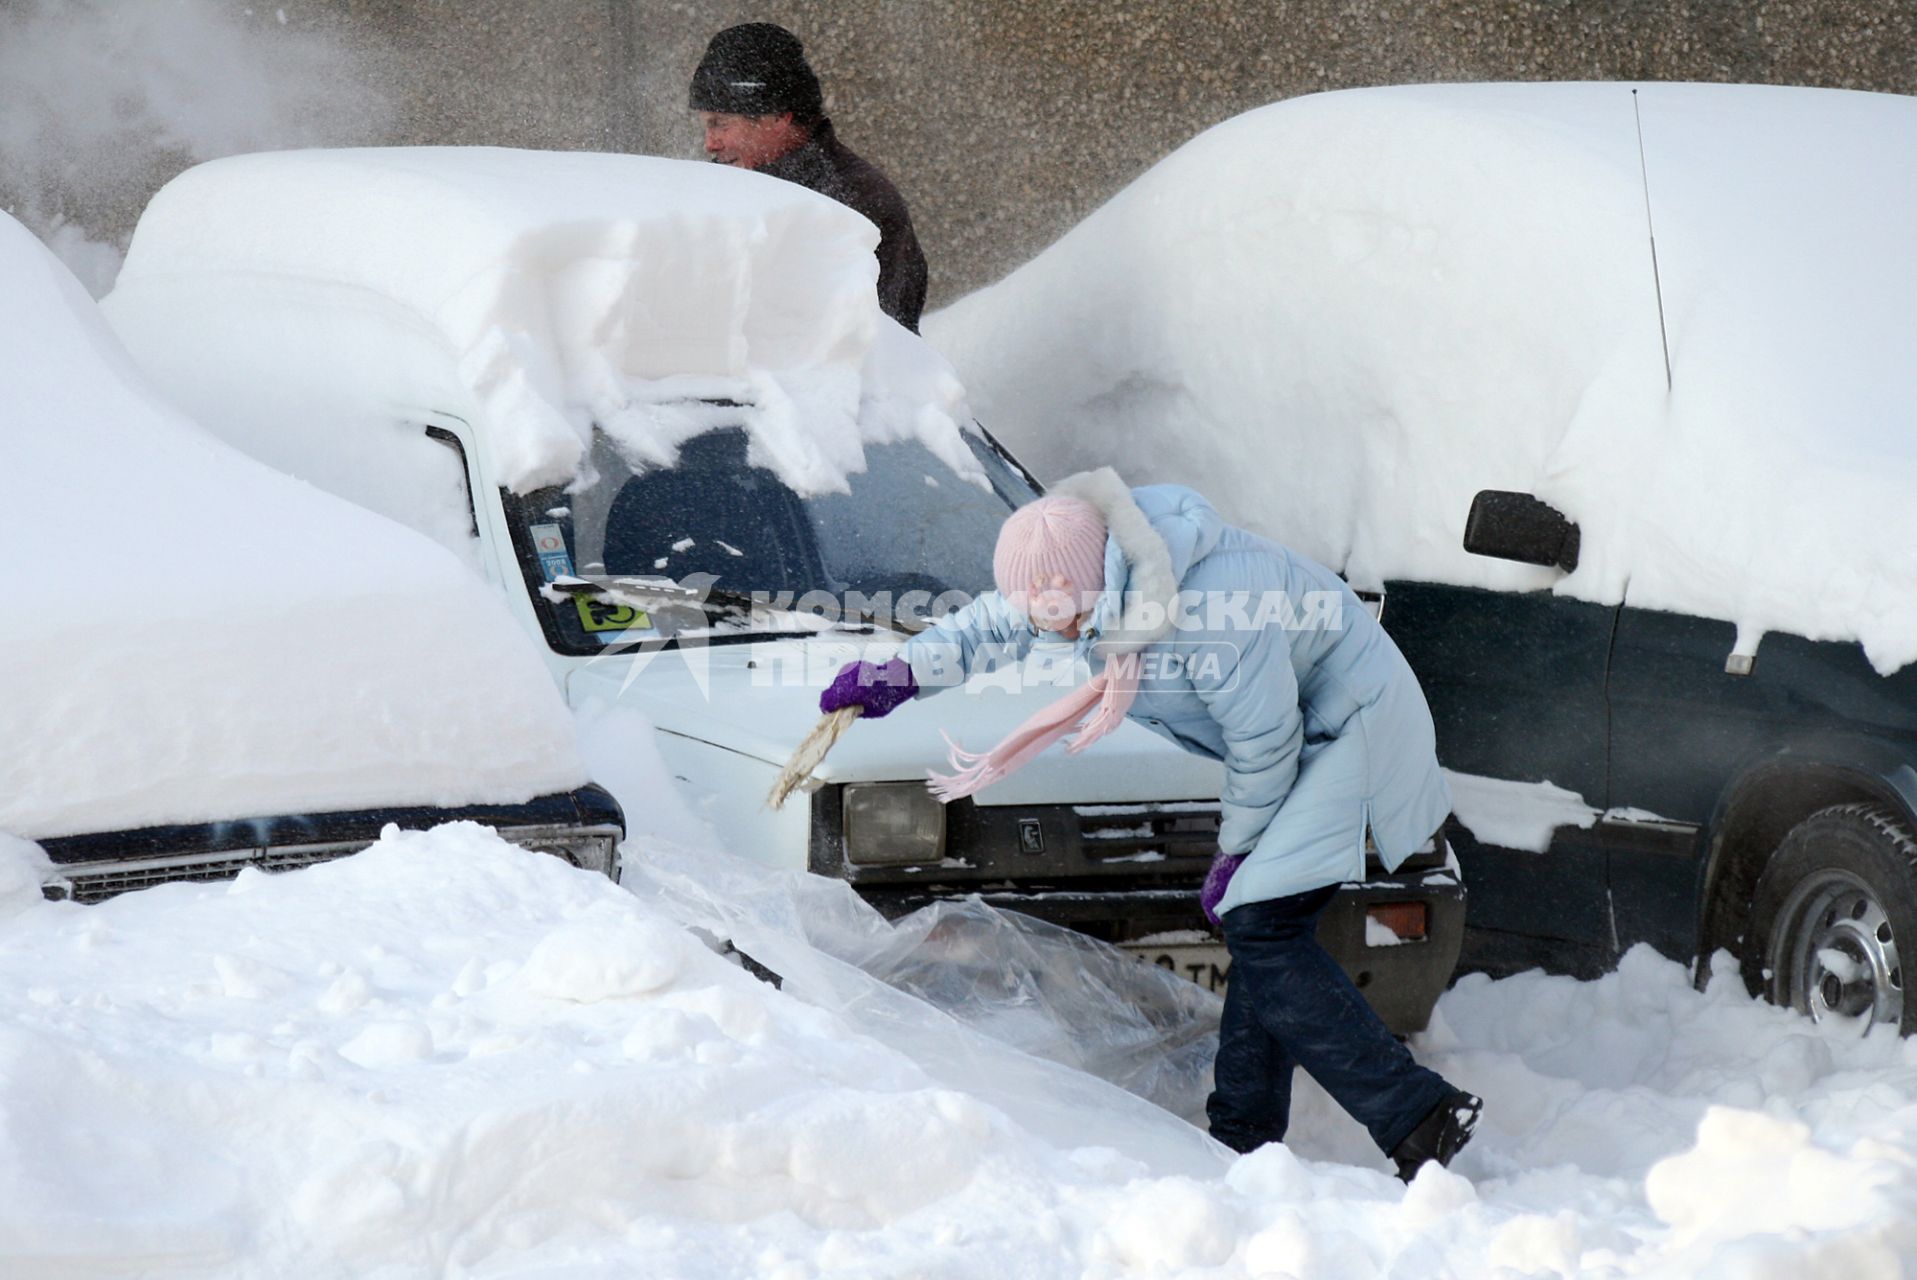 Последствия снегопада. Девушка счищает снег с автомобиля.